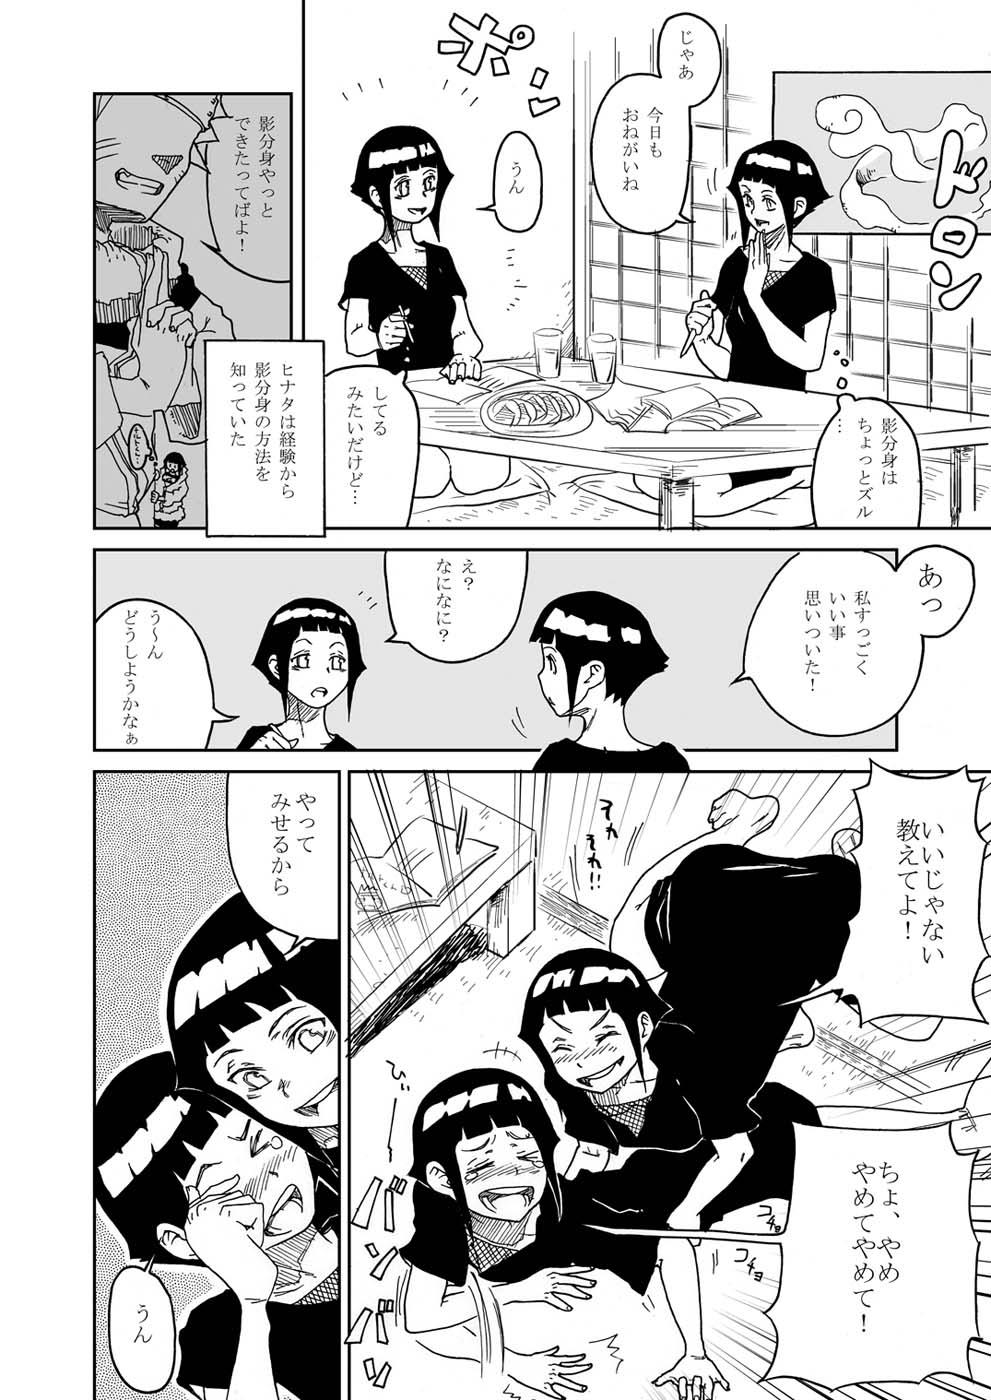 Strange Anata Shika Mienai - Naruto Dancing - Page 4